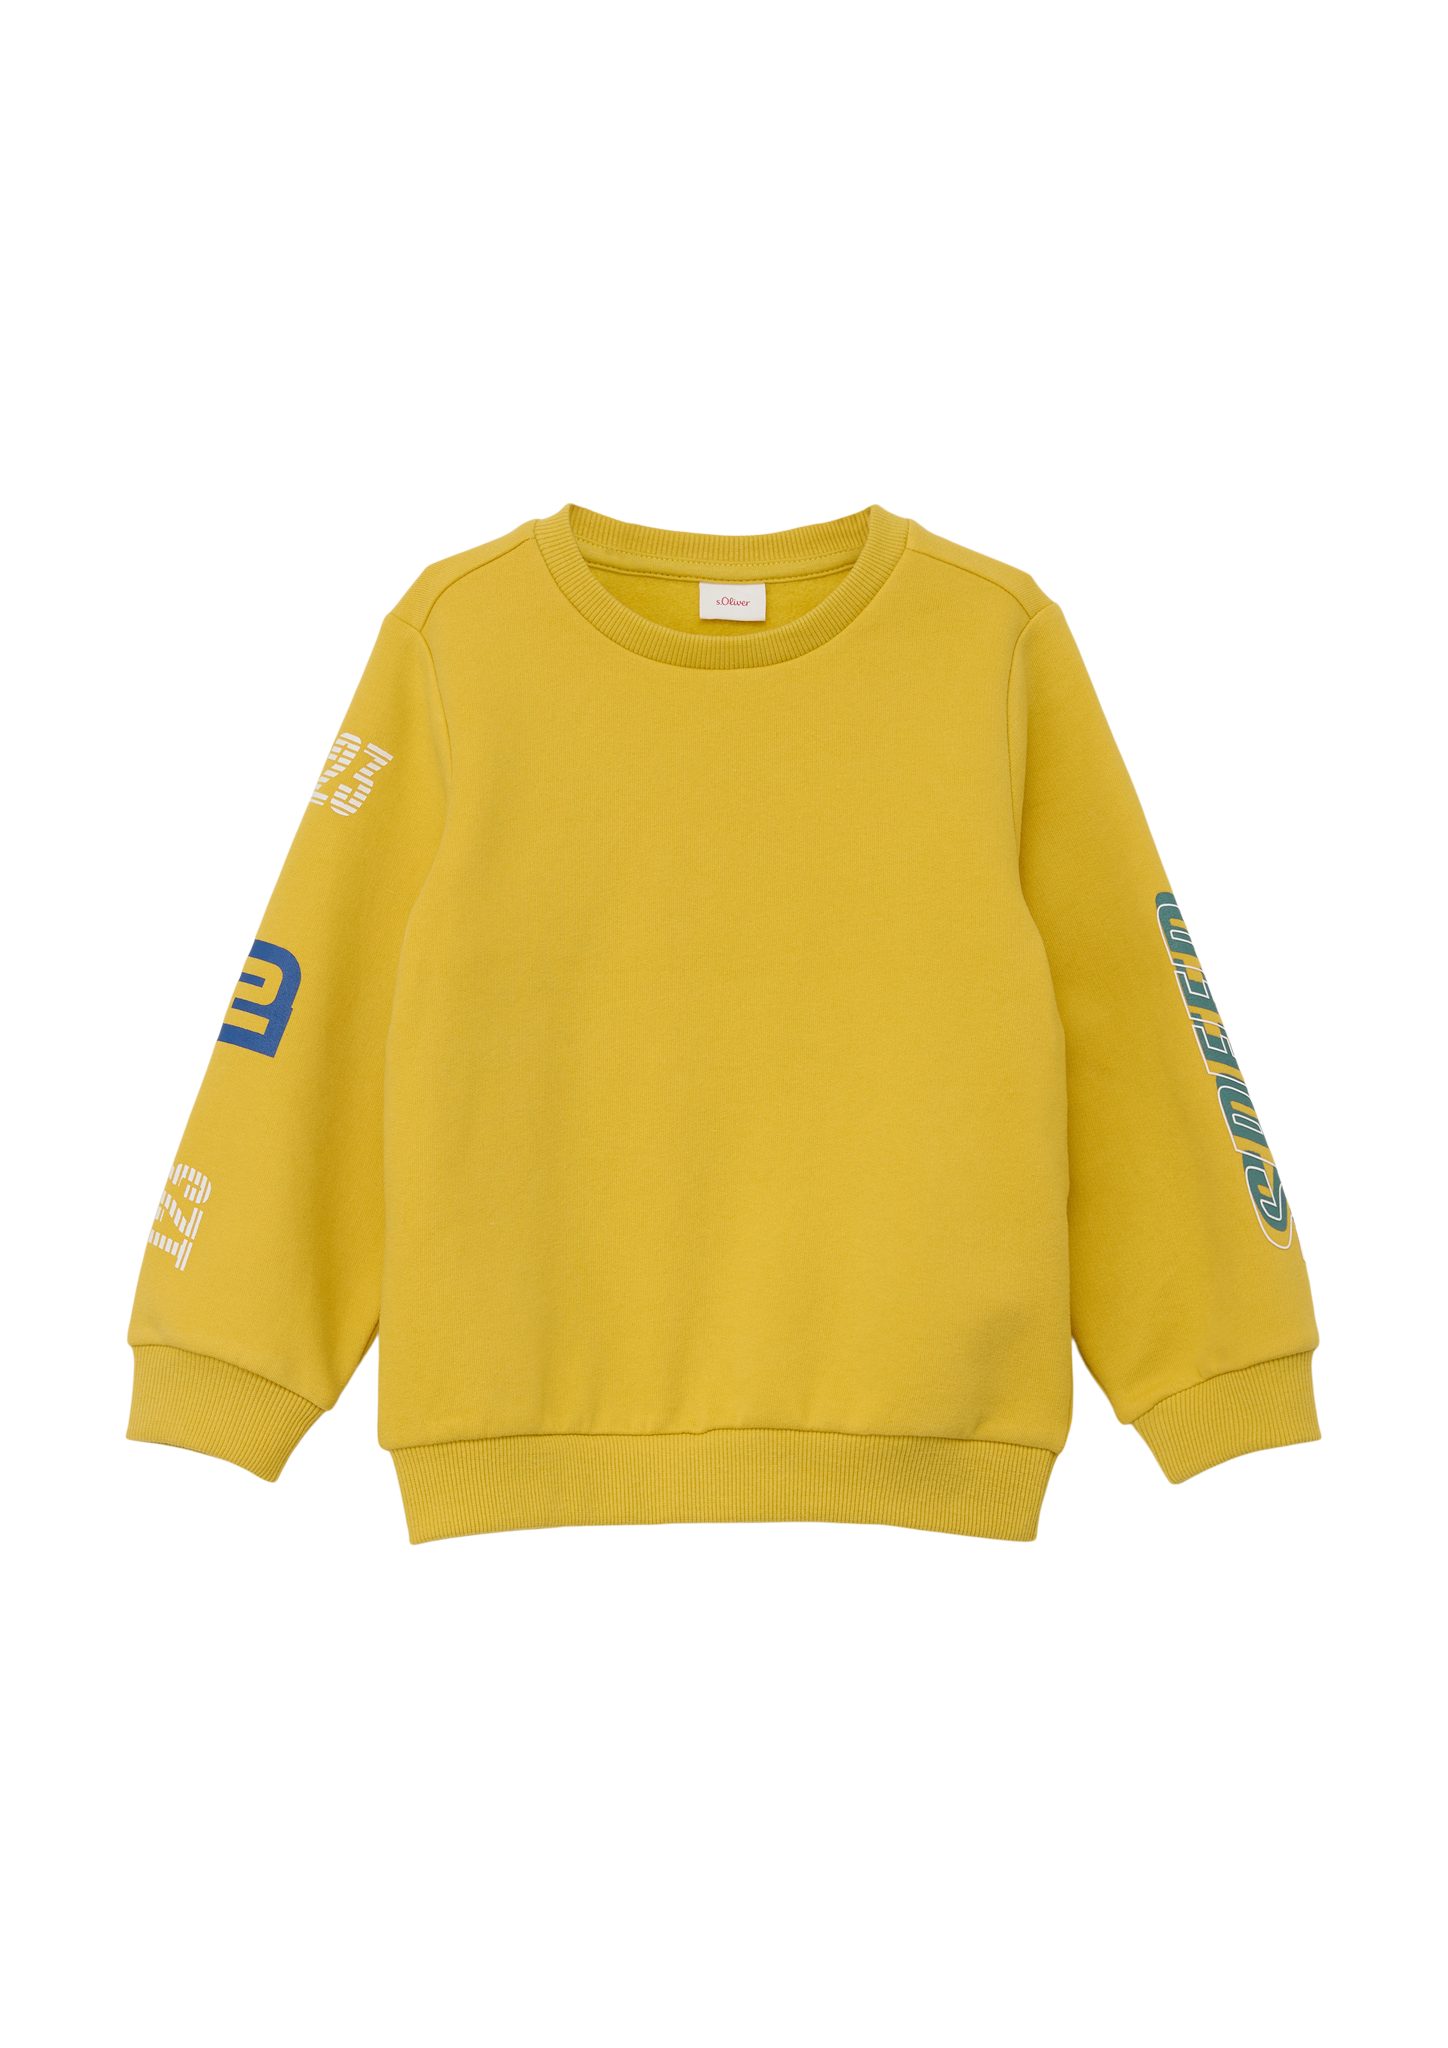 s.Oliver Sweatshirt aus Sweatshirt gelb Baumwollmix